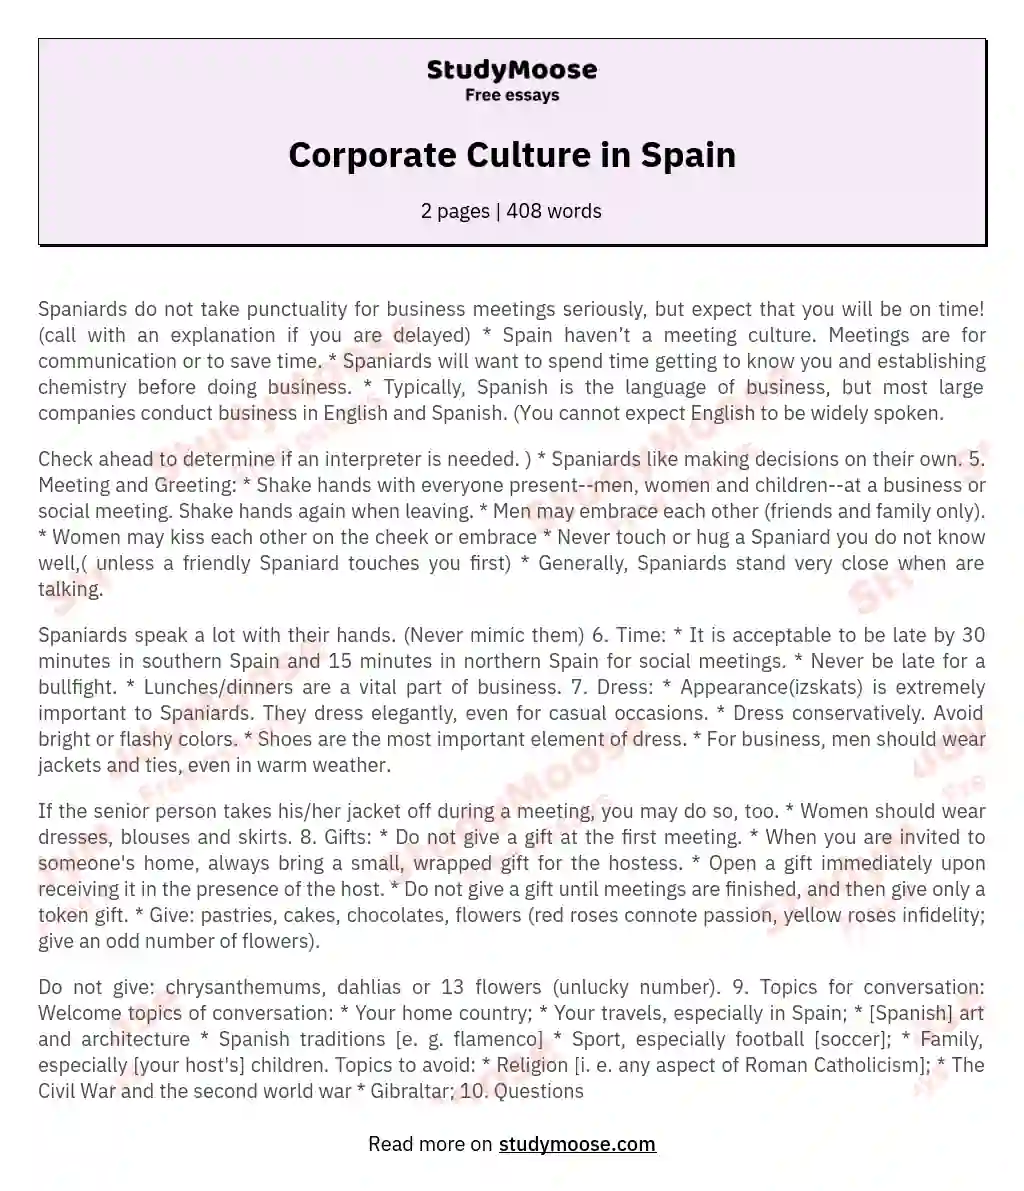 Corporate Culture in Spain